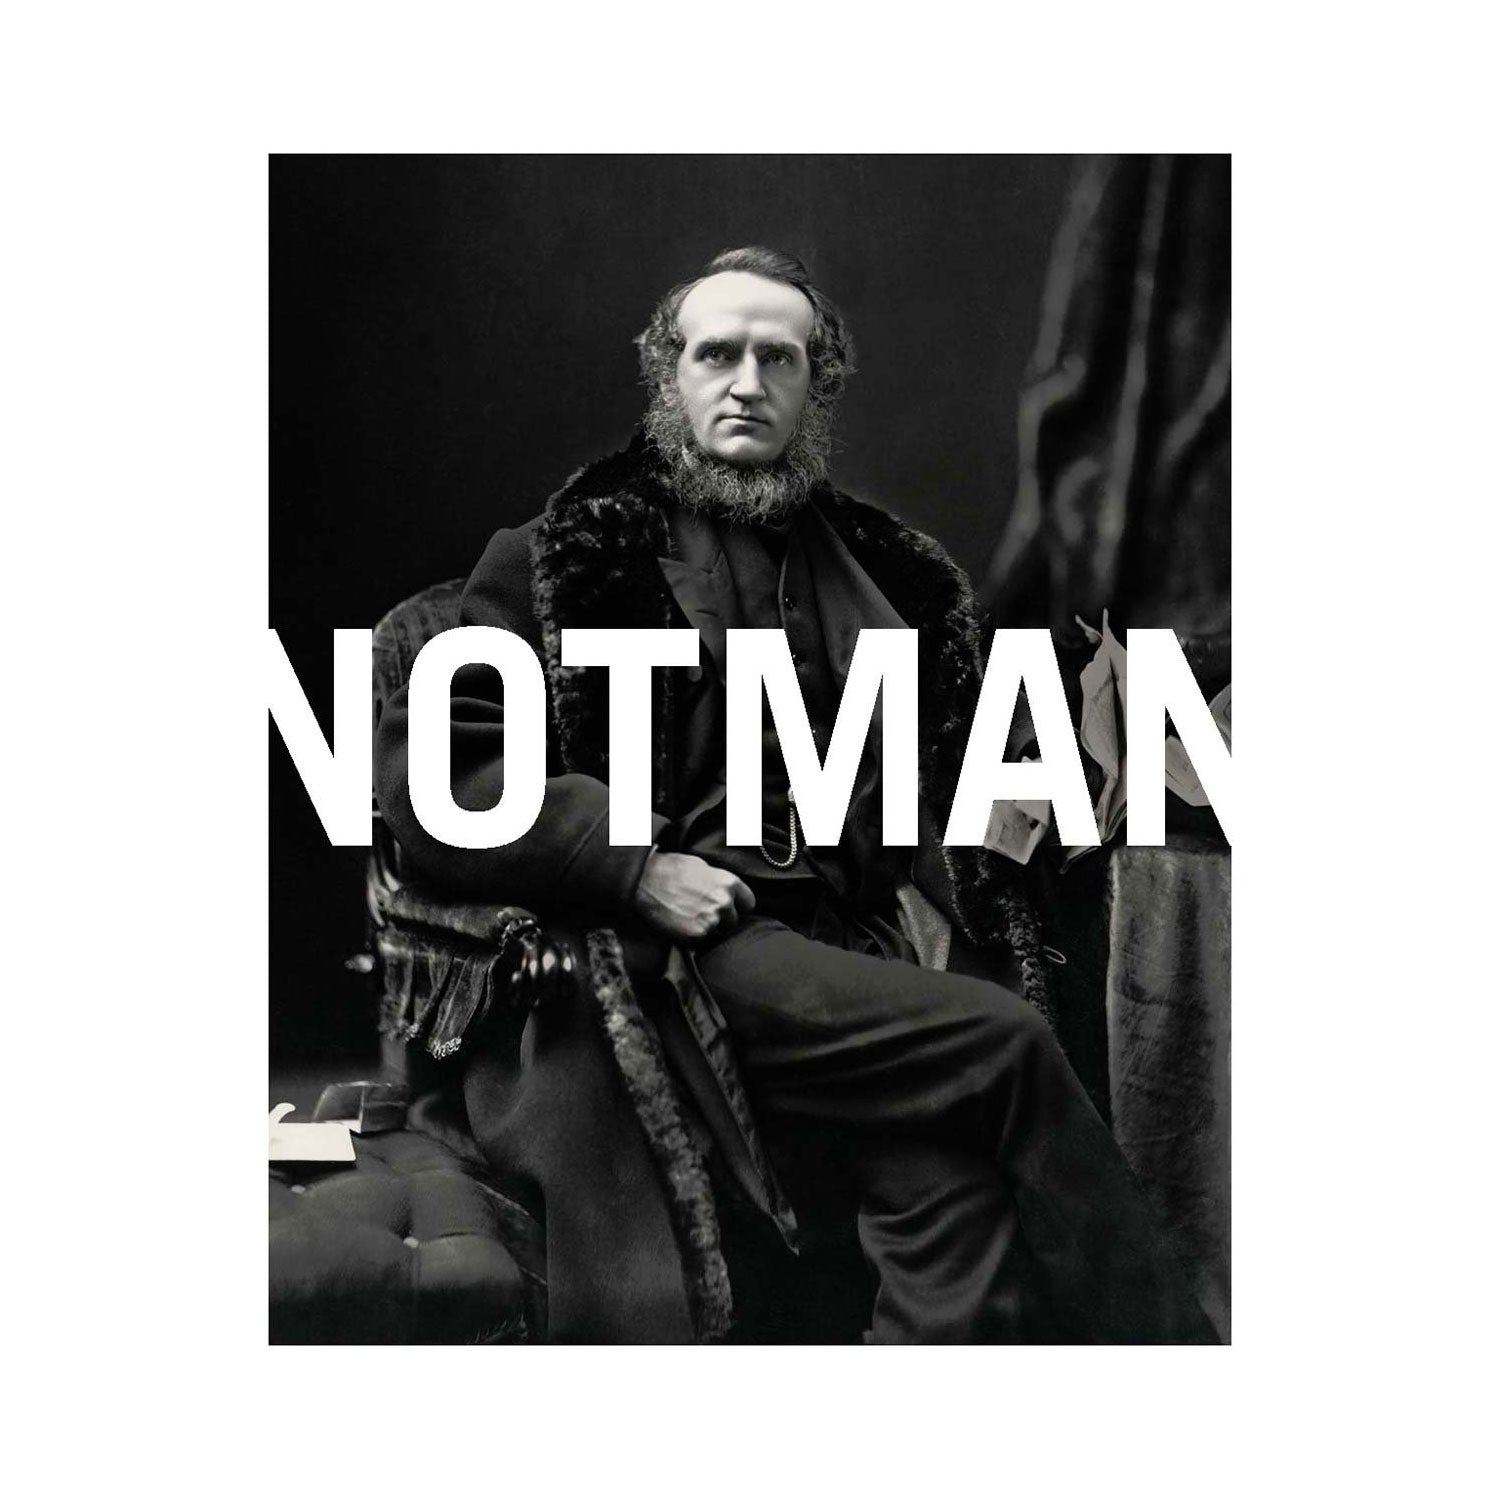 Notman by William Notman Photo Museum Ireland